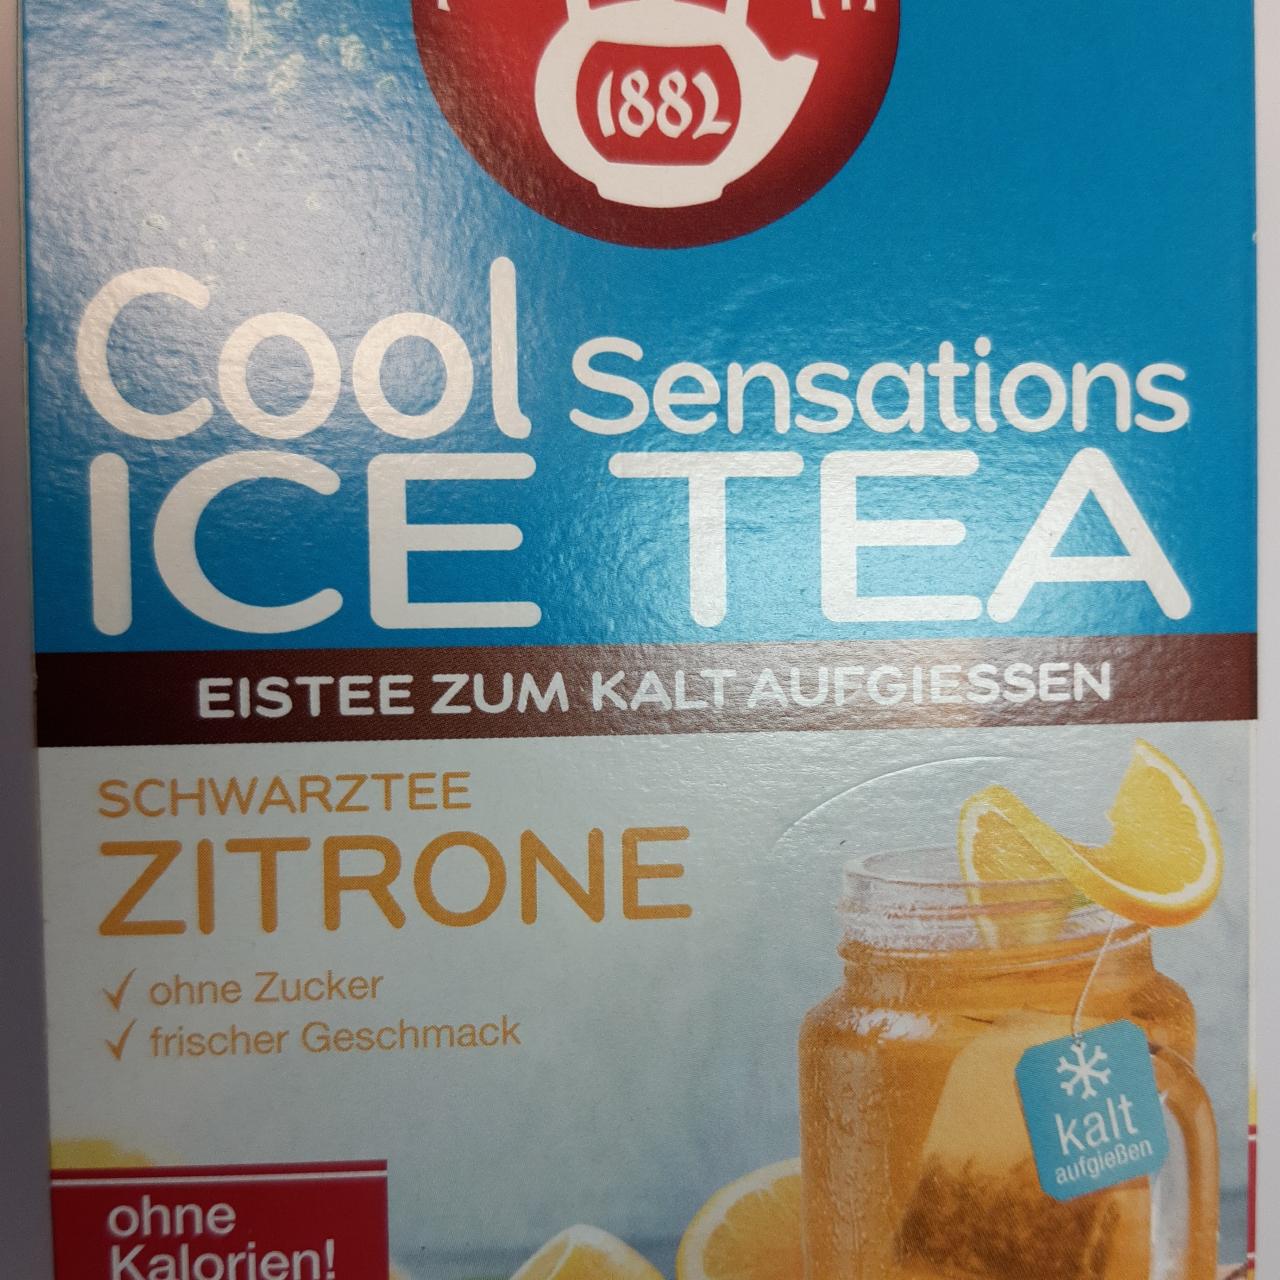 Fotografie - Cool Sensations Ice Tea Schwarztee Zitrone Teekanne